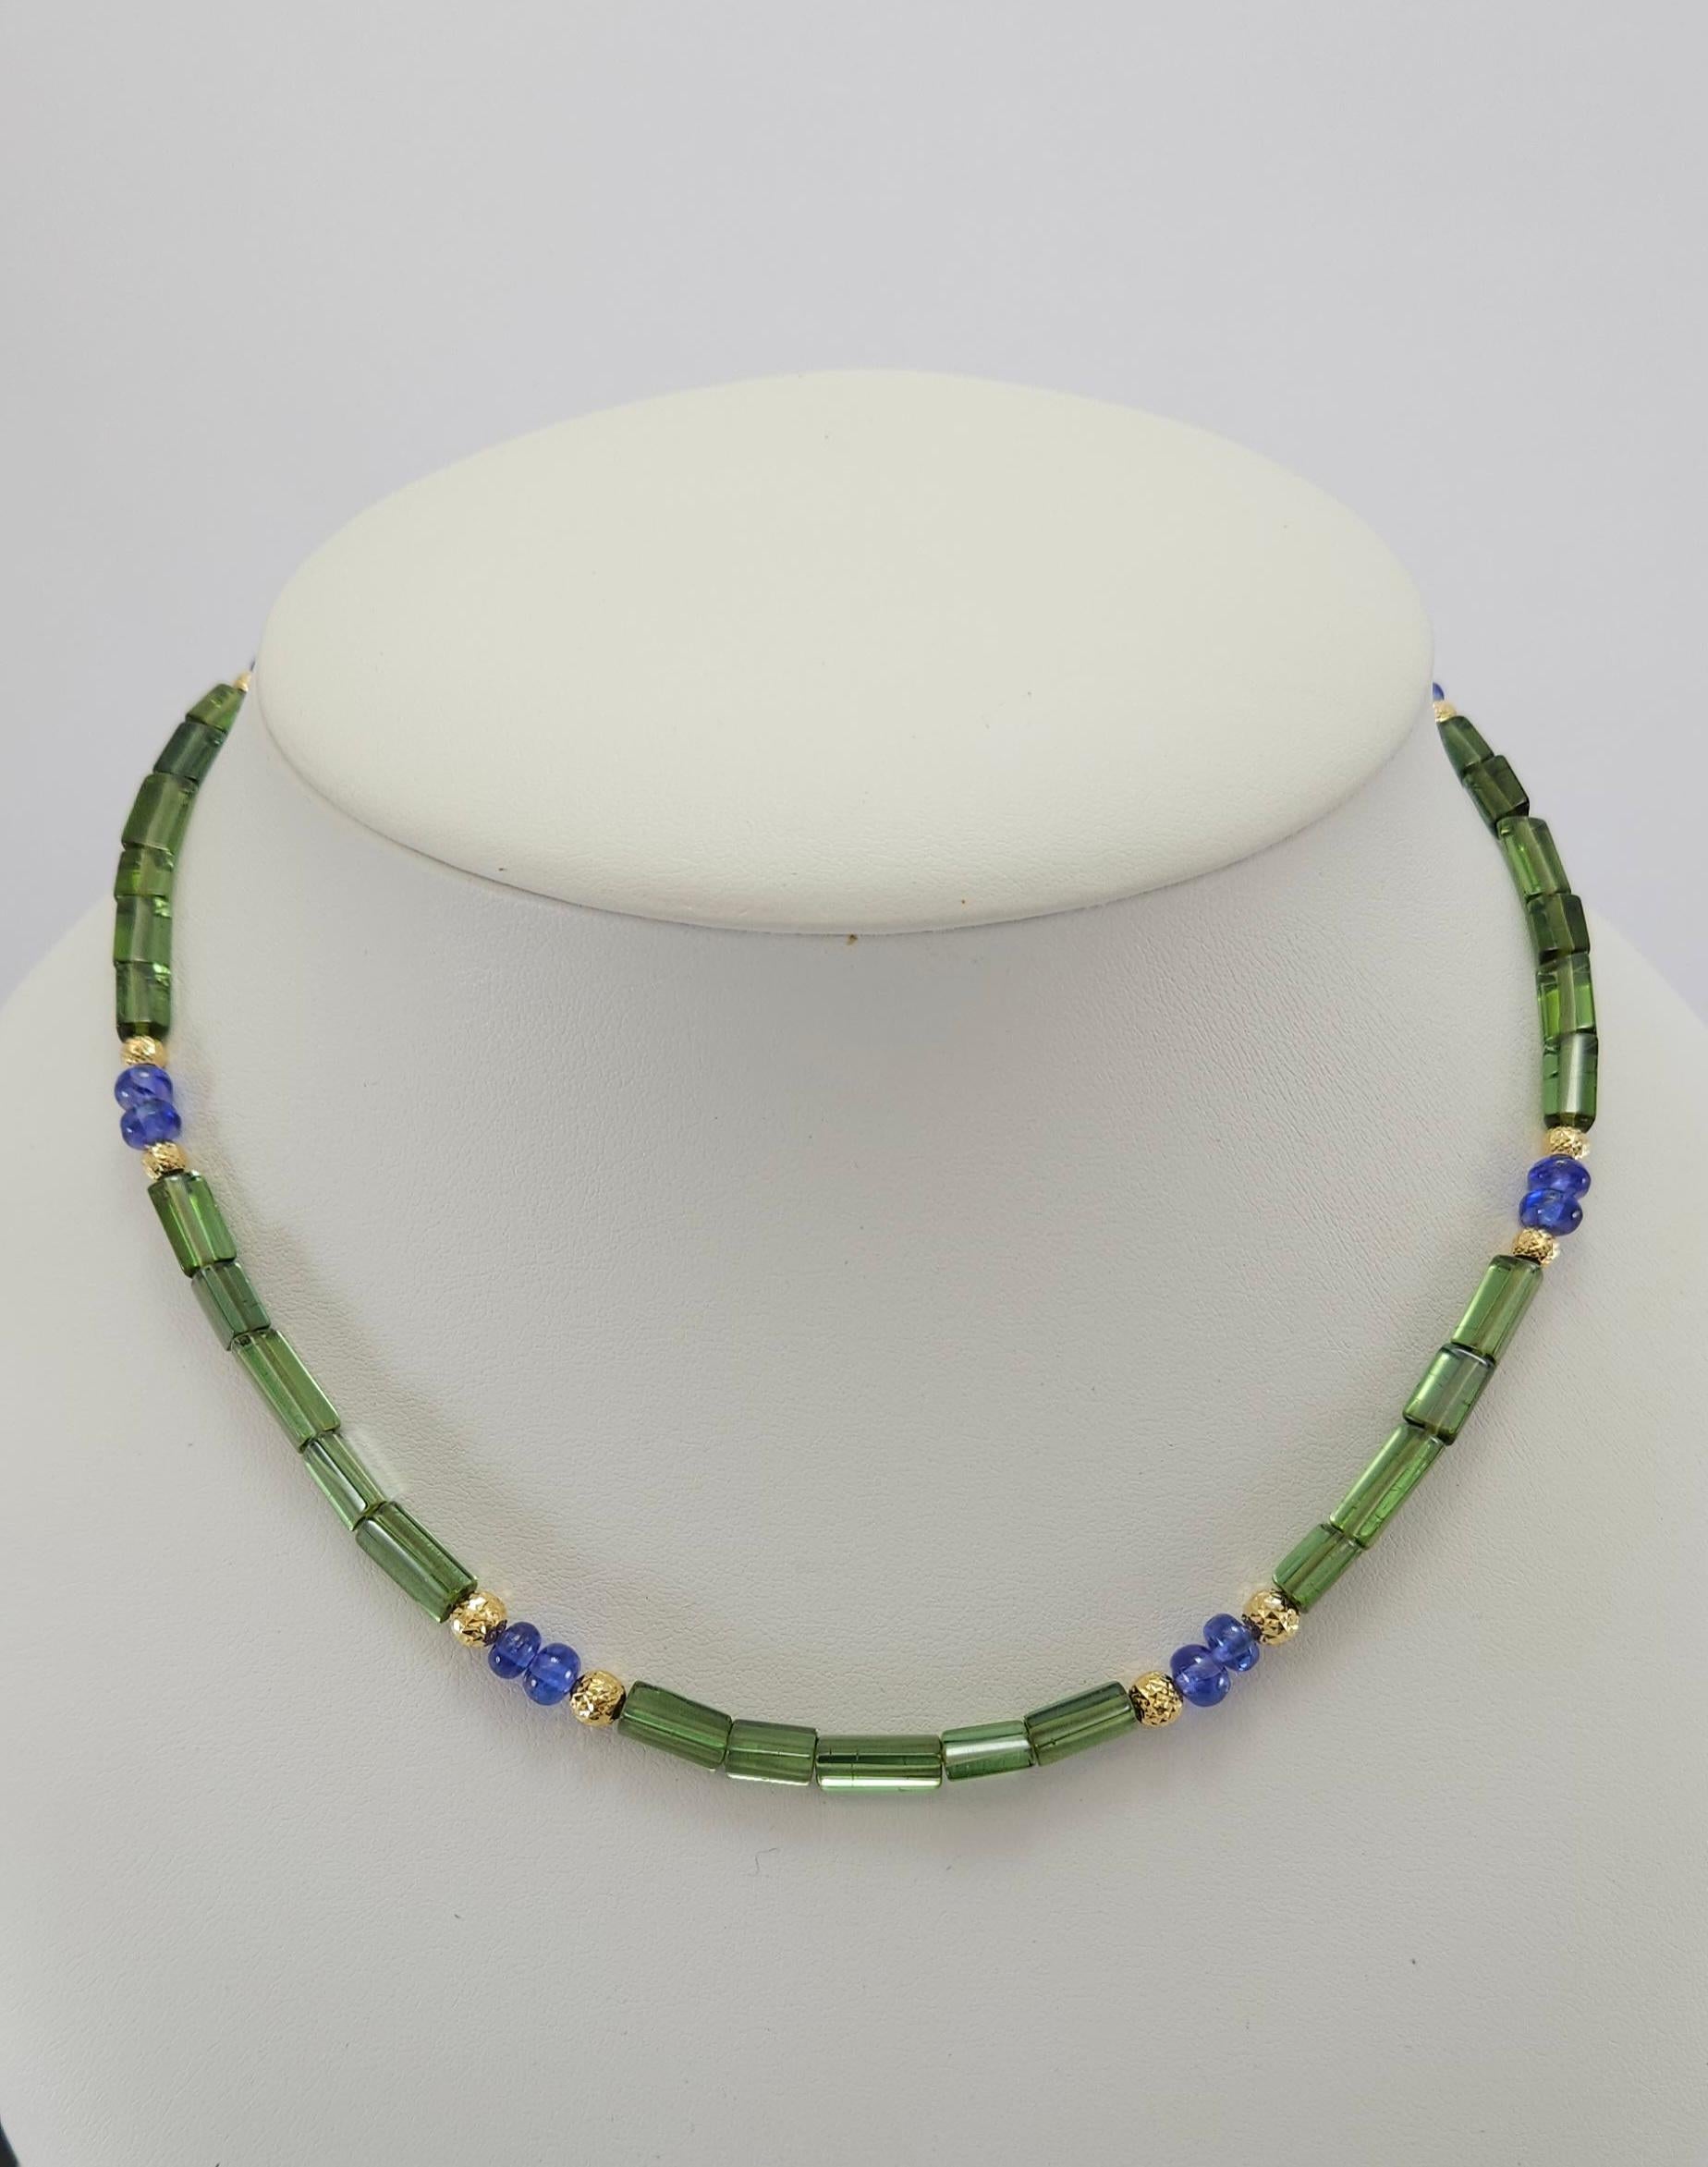 Diese Rondell-Halskette mit natürlichem grünem Turmalin-Kristall und Tansanit in 18 Karat Gelbgold ist handgeschliffen und in deutscher Qualität gefertigt.
Der Schraubverschluss ist einfach zu bedienen und sehr sicher. Die dreieckige Form wurde von